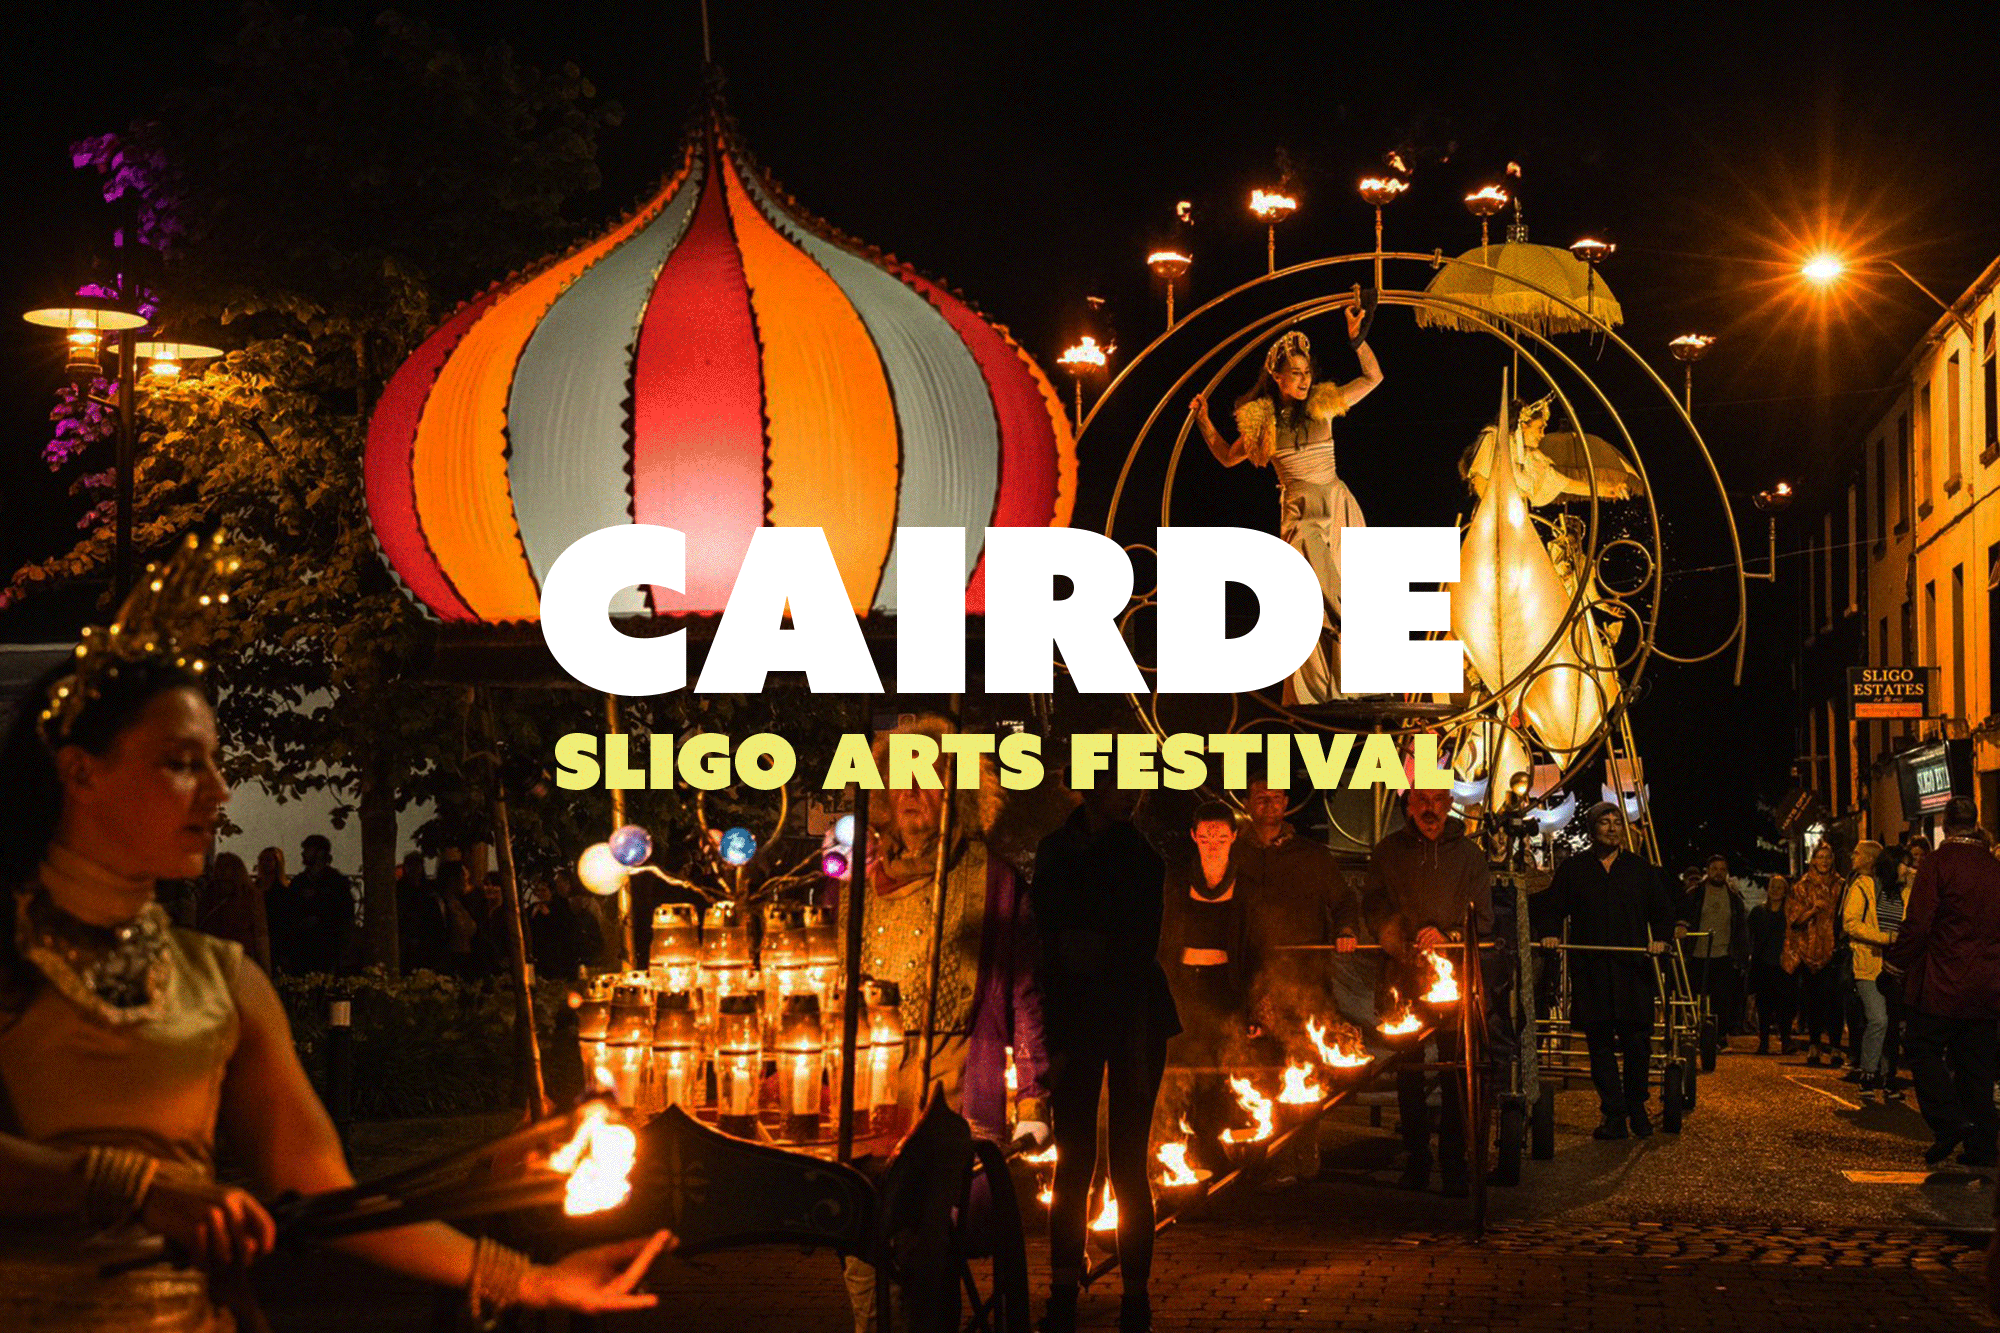 Cover image: Cairde Sligo Arts Festival